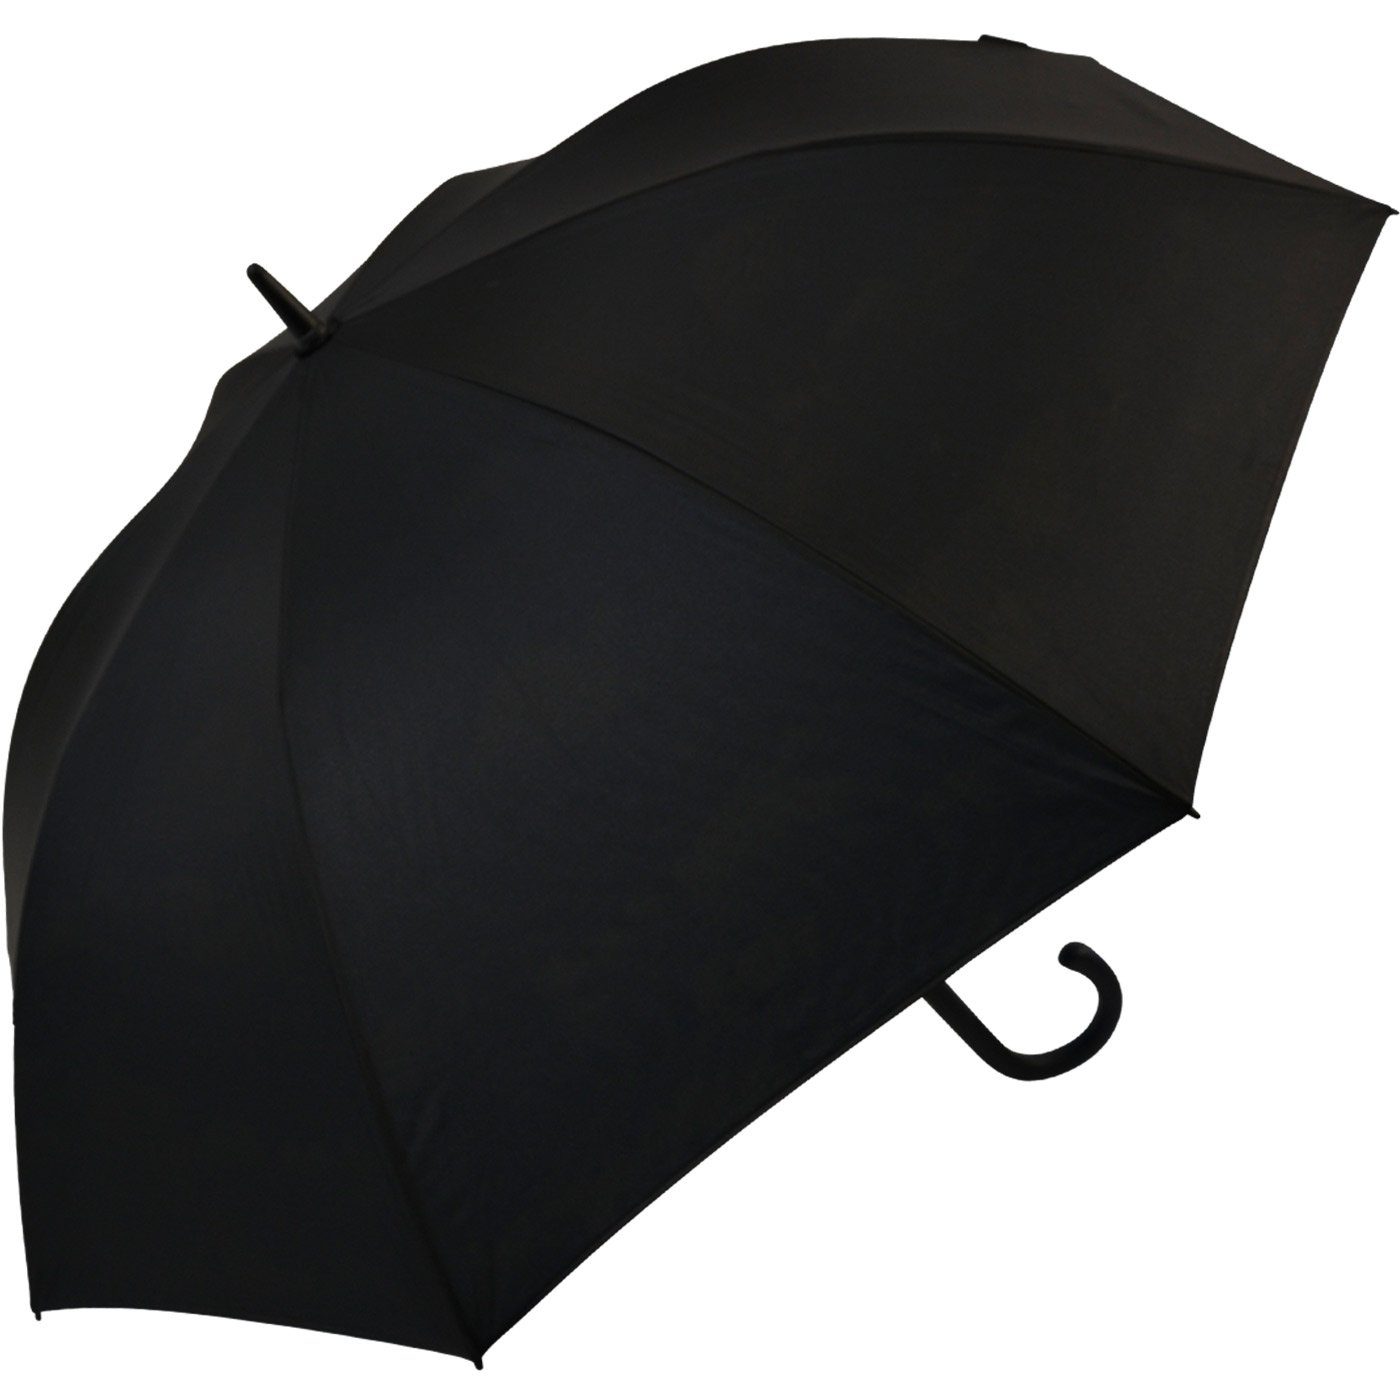 Impliva Langregenschirm Falcone® mit Automatik nur innen Motiv das bedruckter Himmel, Regen-schwarz - sichtbar von ist innen